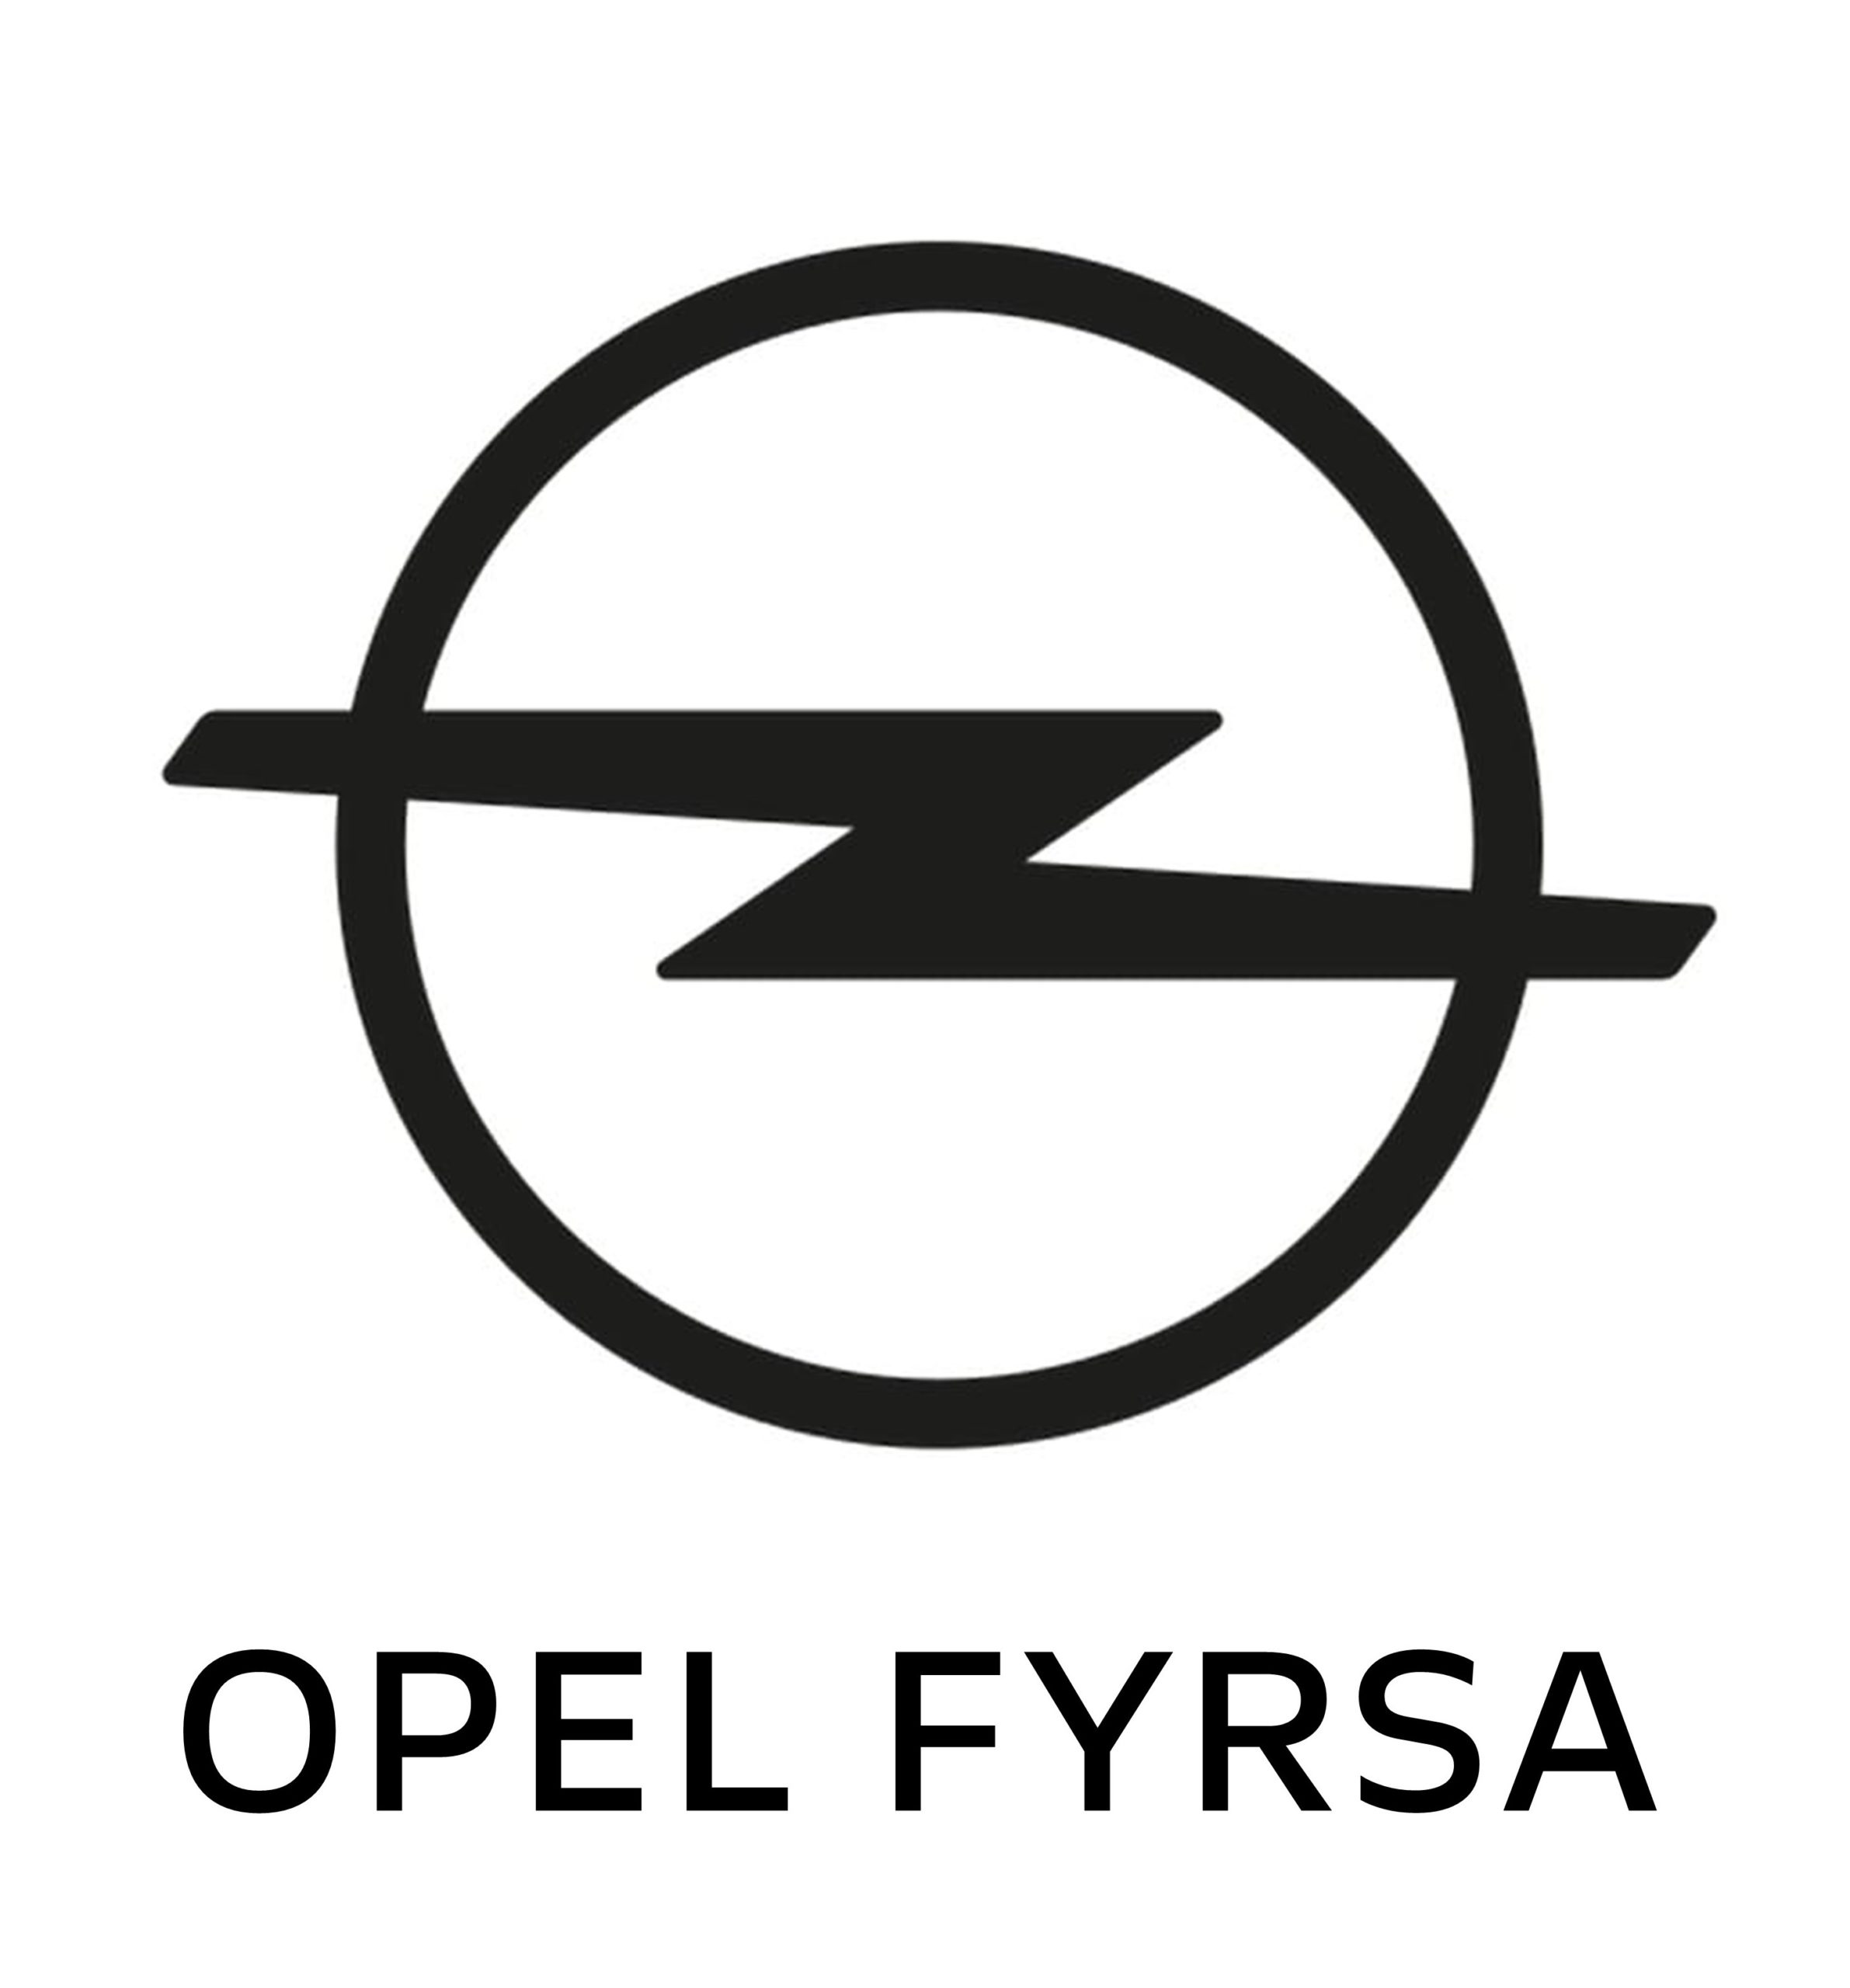 Opel Fyrsa